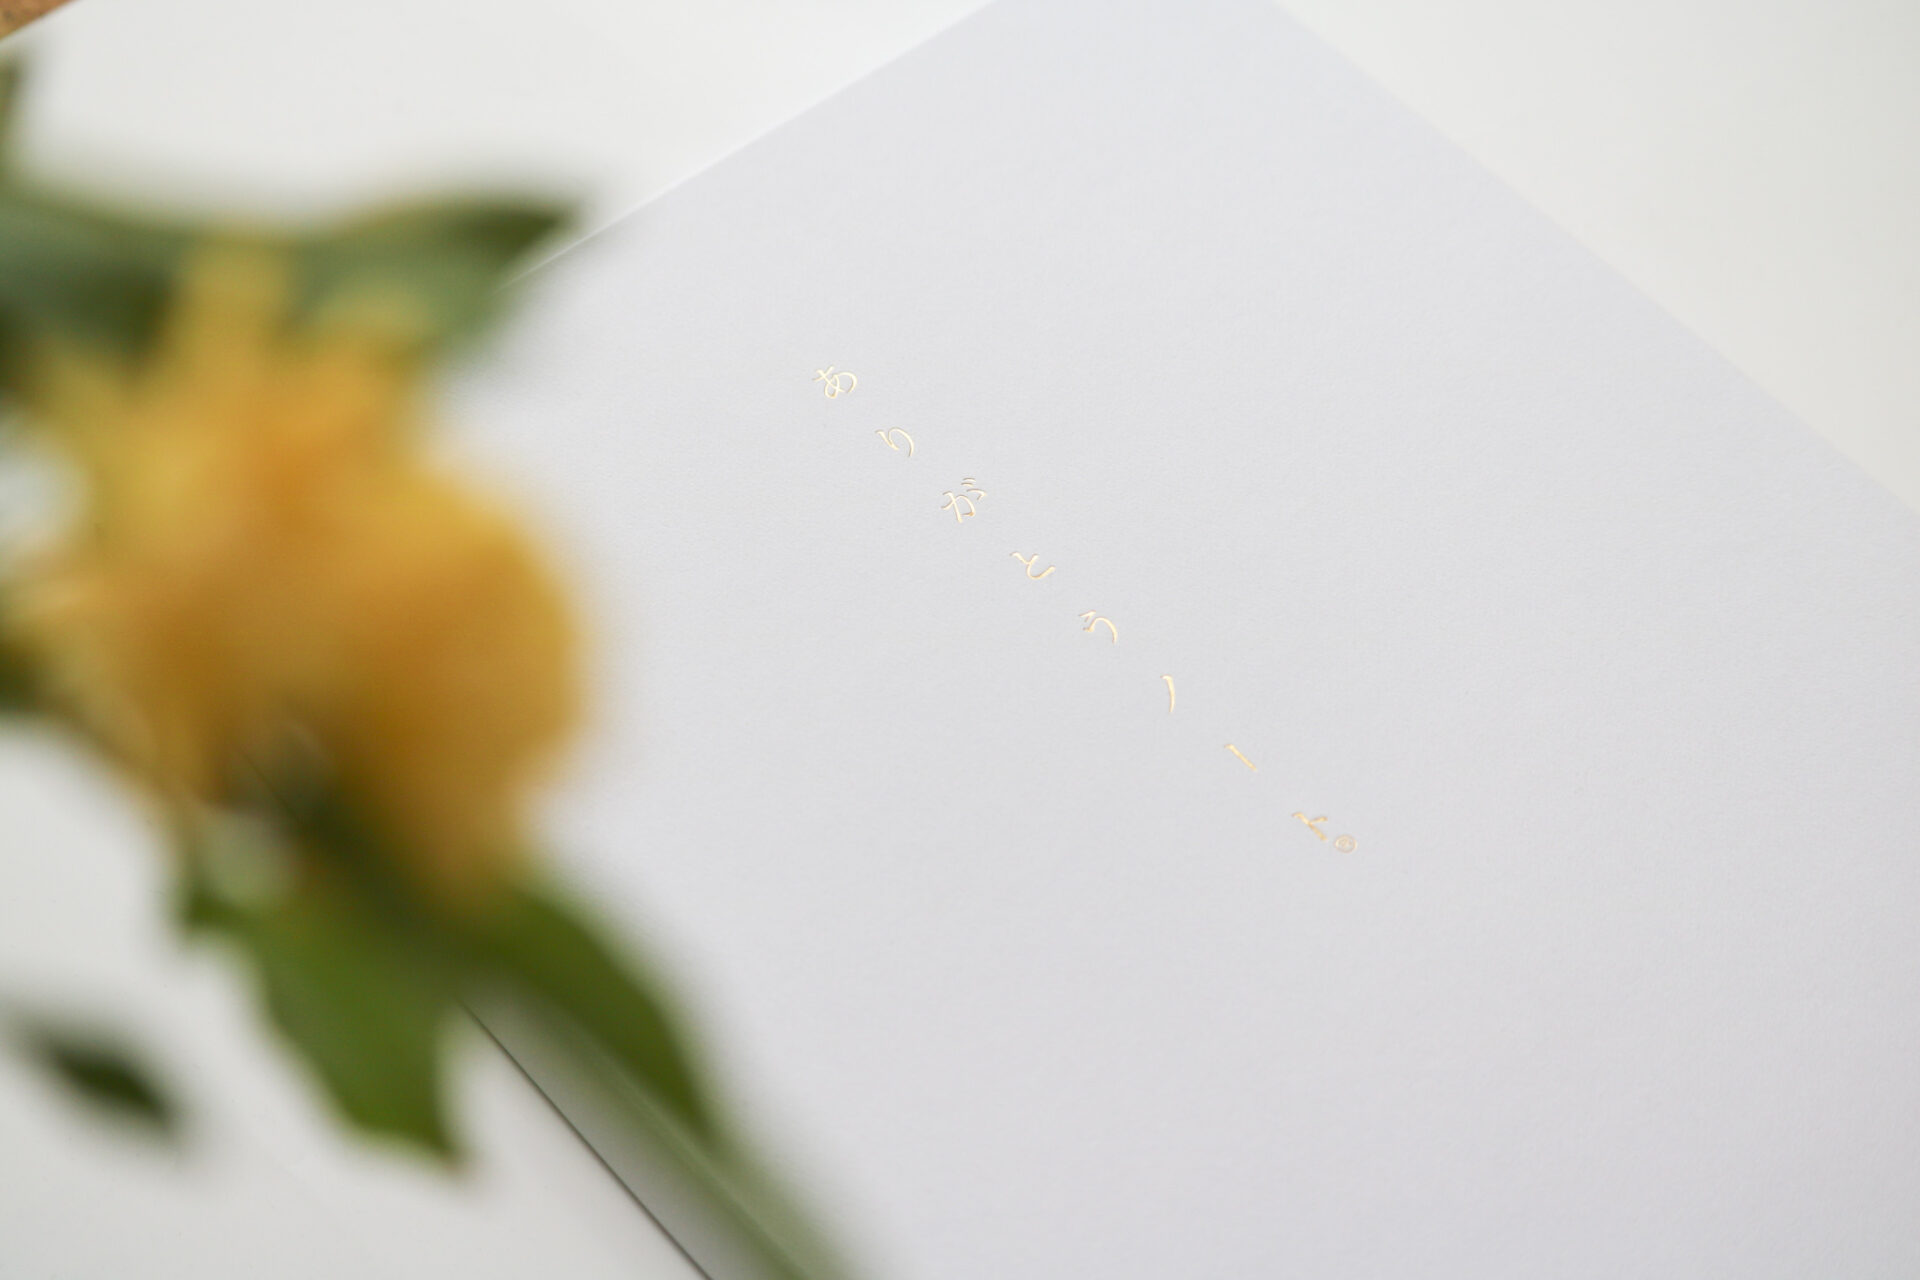 写真。箱の表面。金色の箔押しで「ありがとうノート®︎」と書かれているが、光の関係で見えづらい。